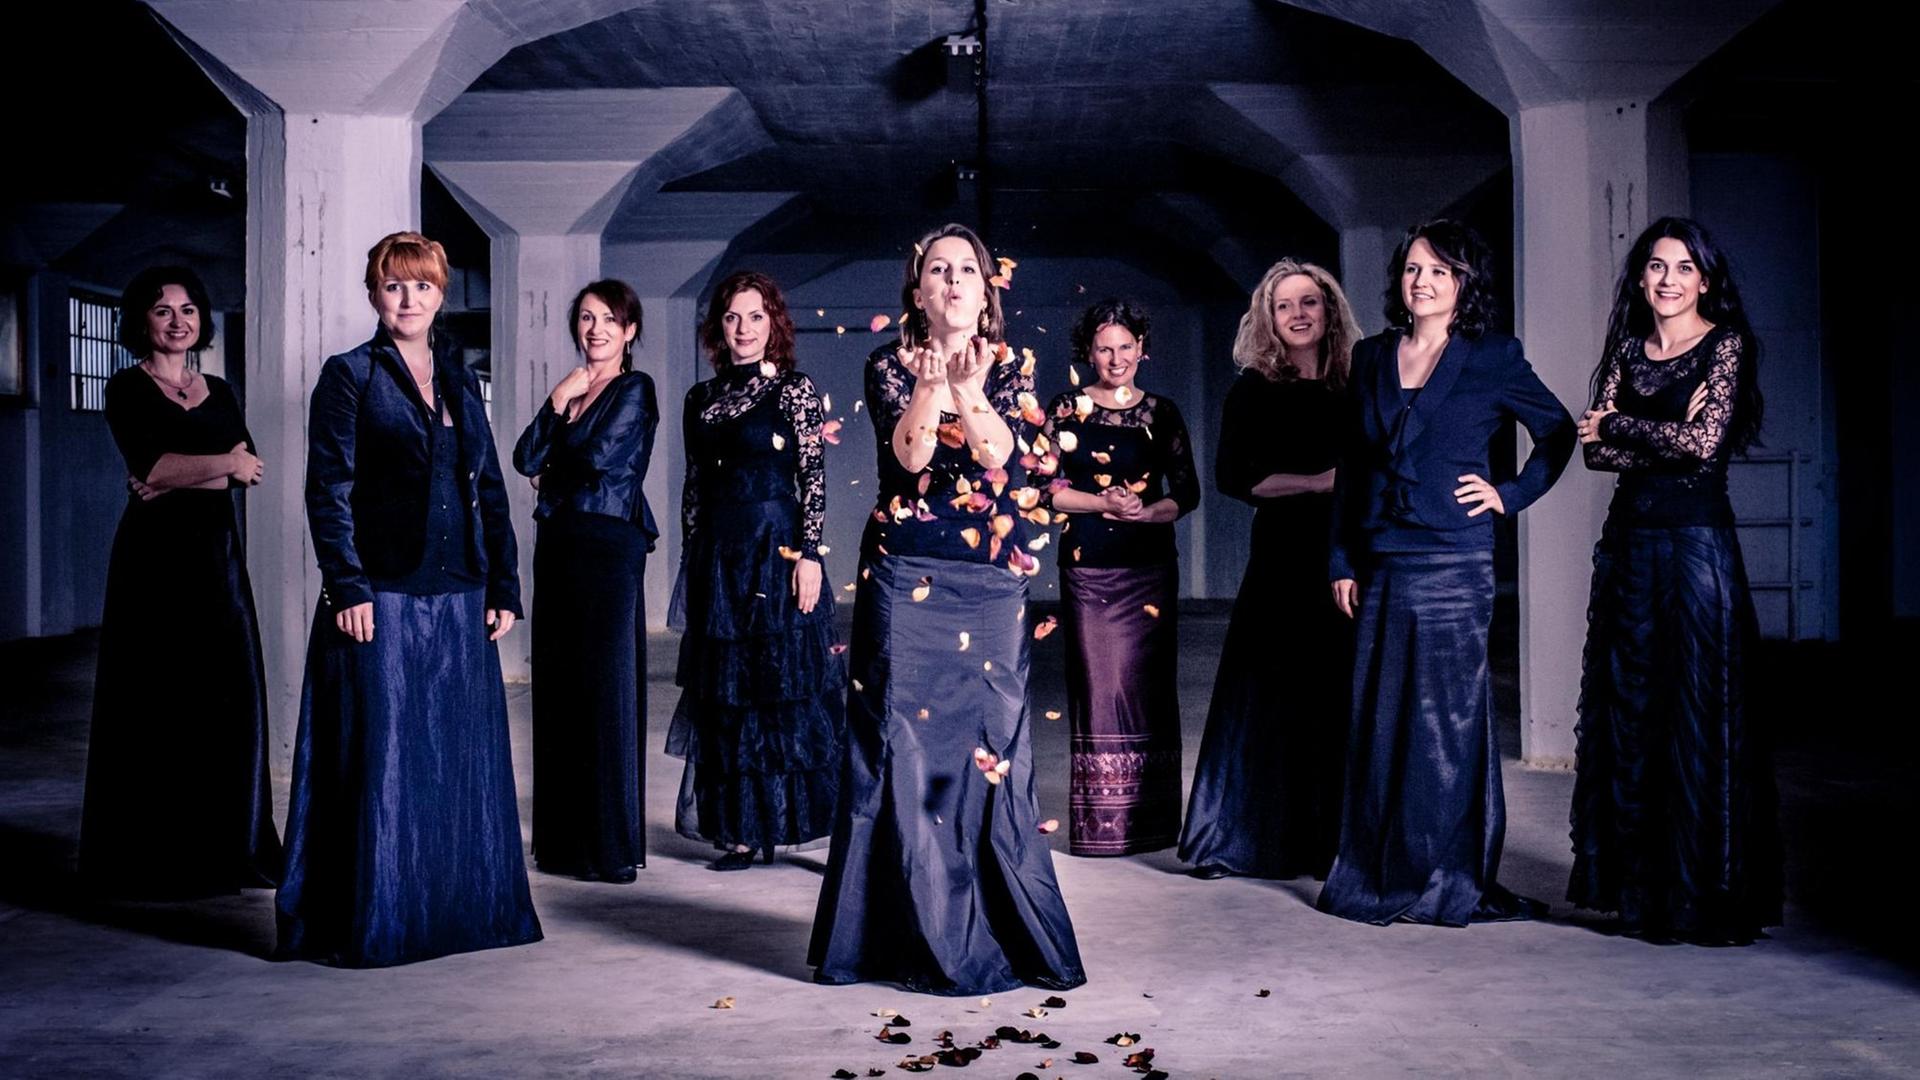 Neun Sängerinnen stehen in einem Halbkreis in einem Keller-Gewölbe und tragen schwarze Kleidung. Eine von ihnen, vorne in der Mitte, pustet bunte Blätter in die Luft. 